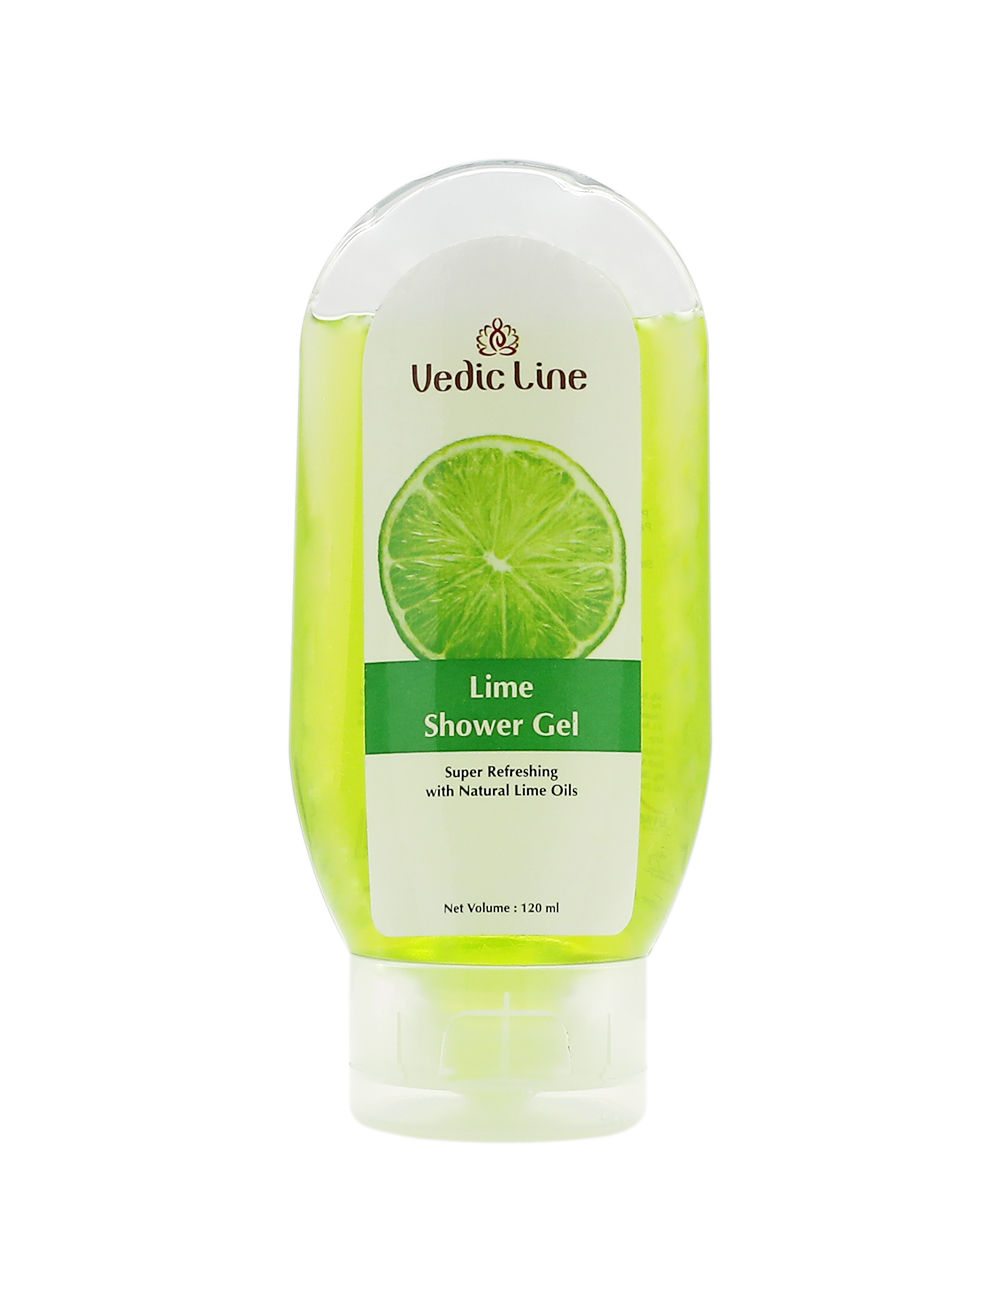 Vedic Line Lime Shower Gel